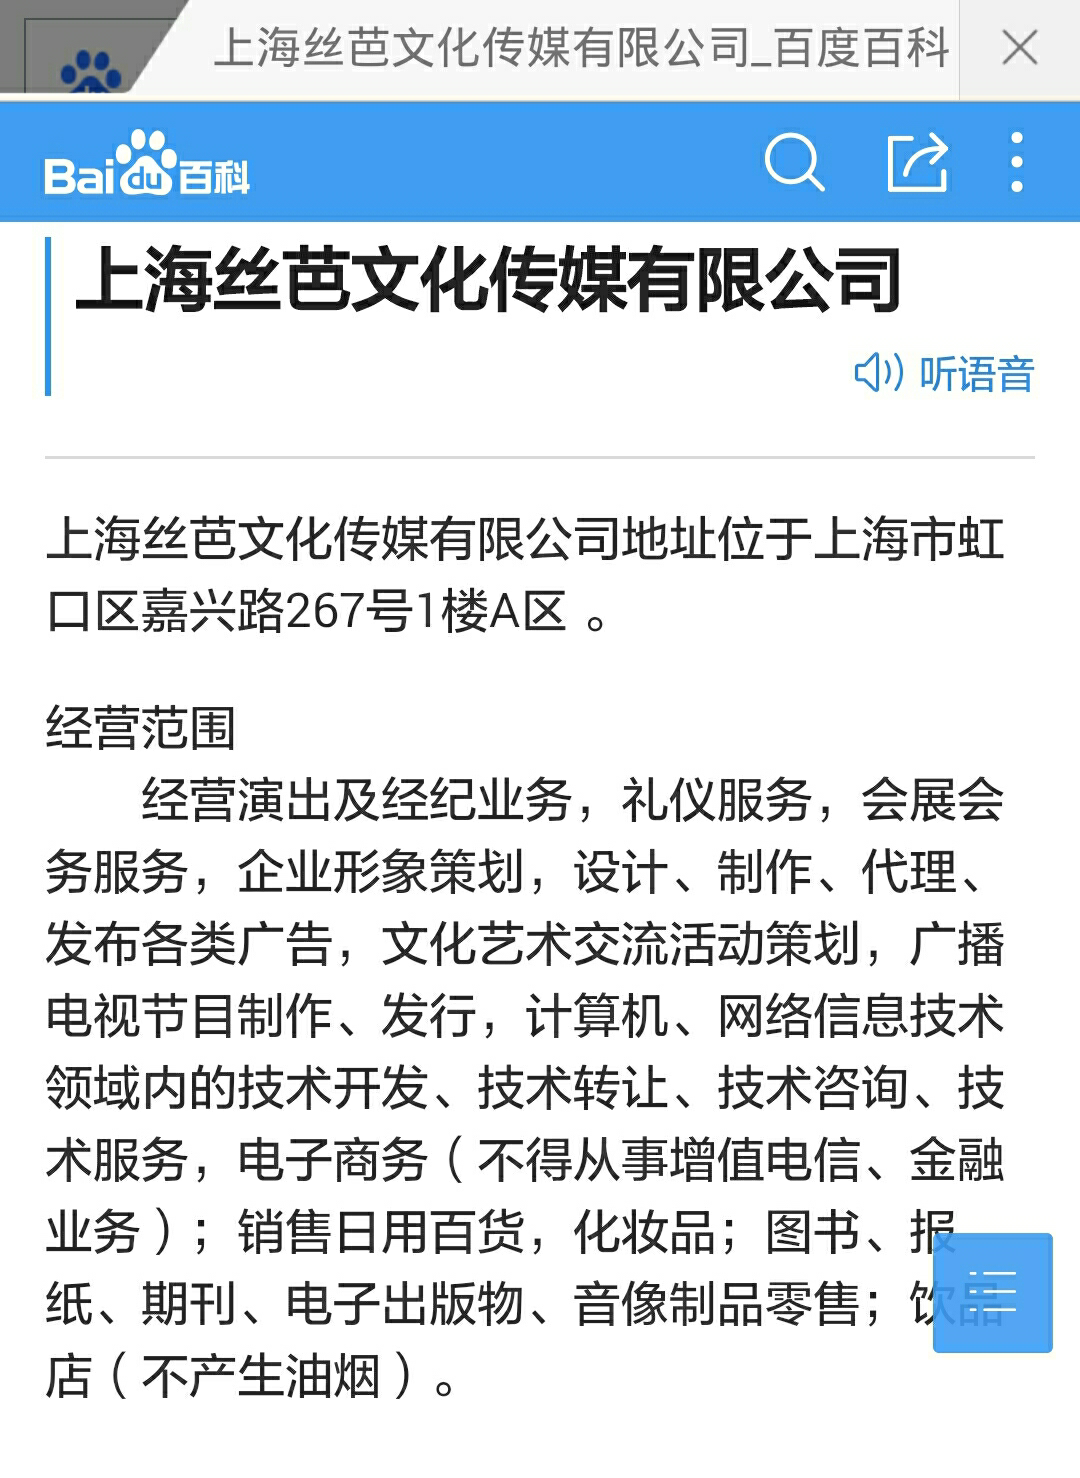 上海丝芭传媒有限公司具体在什么地方?